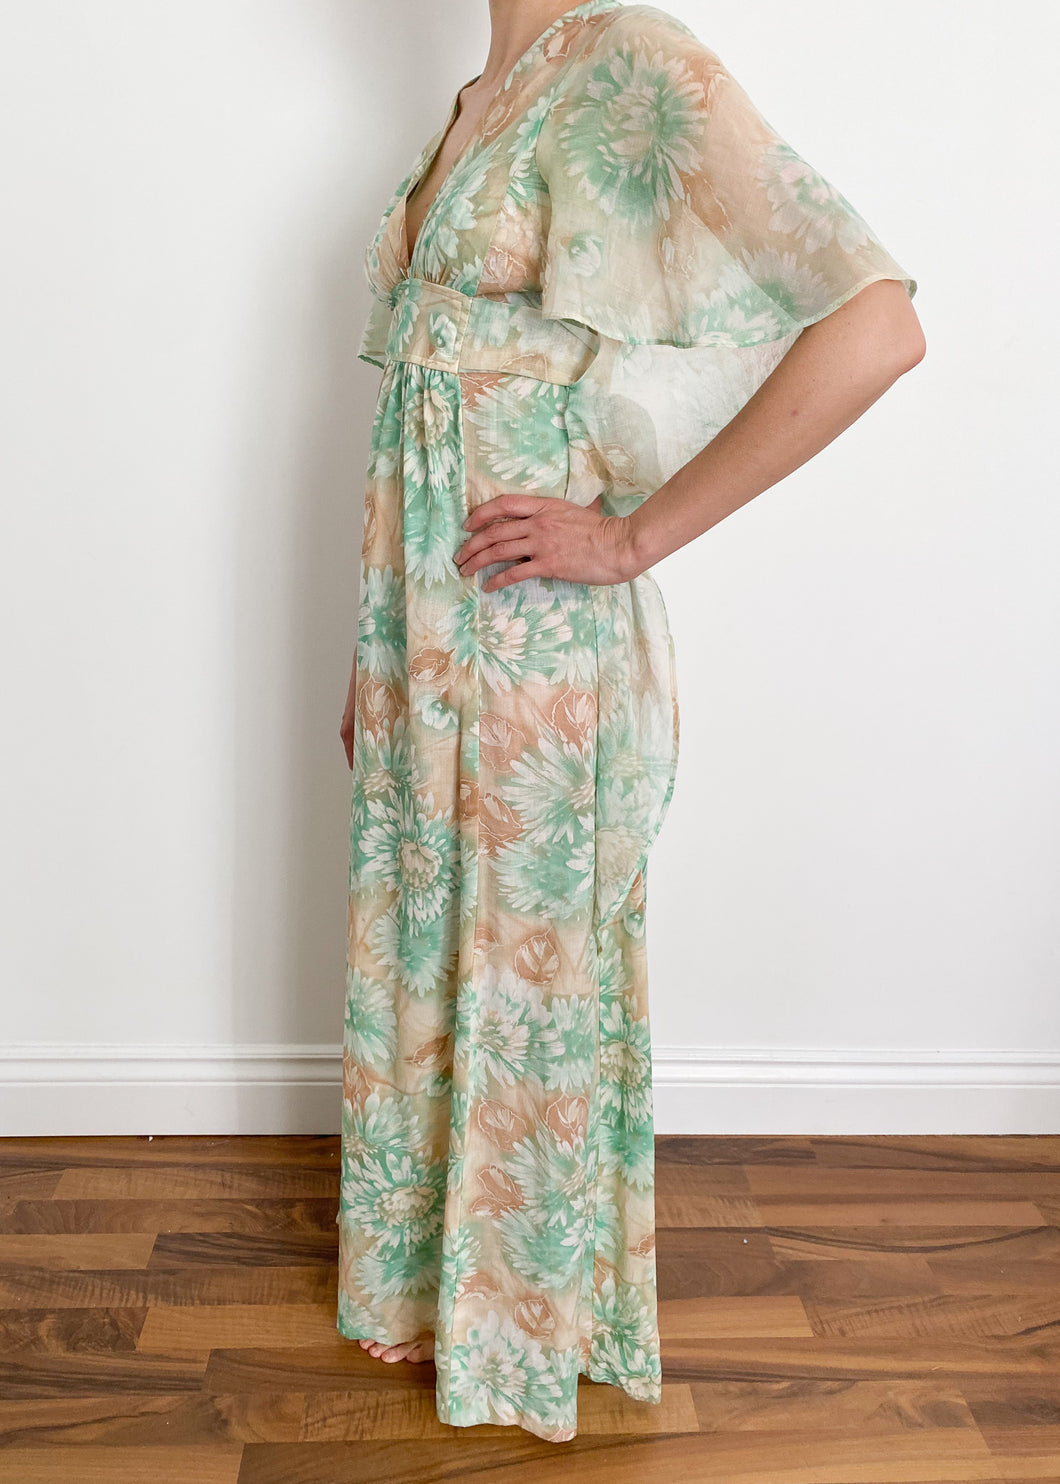 70's Floral Dress